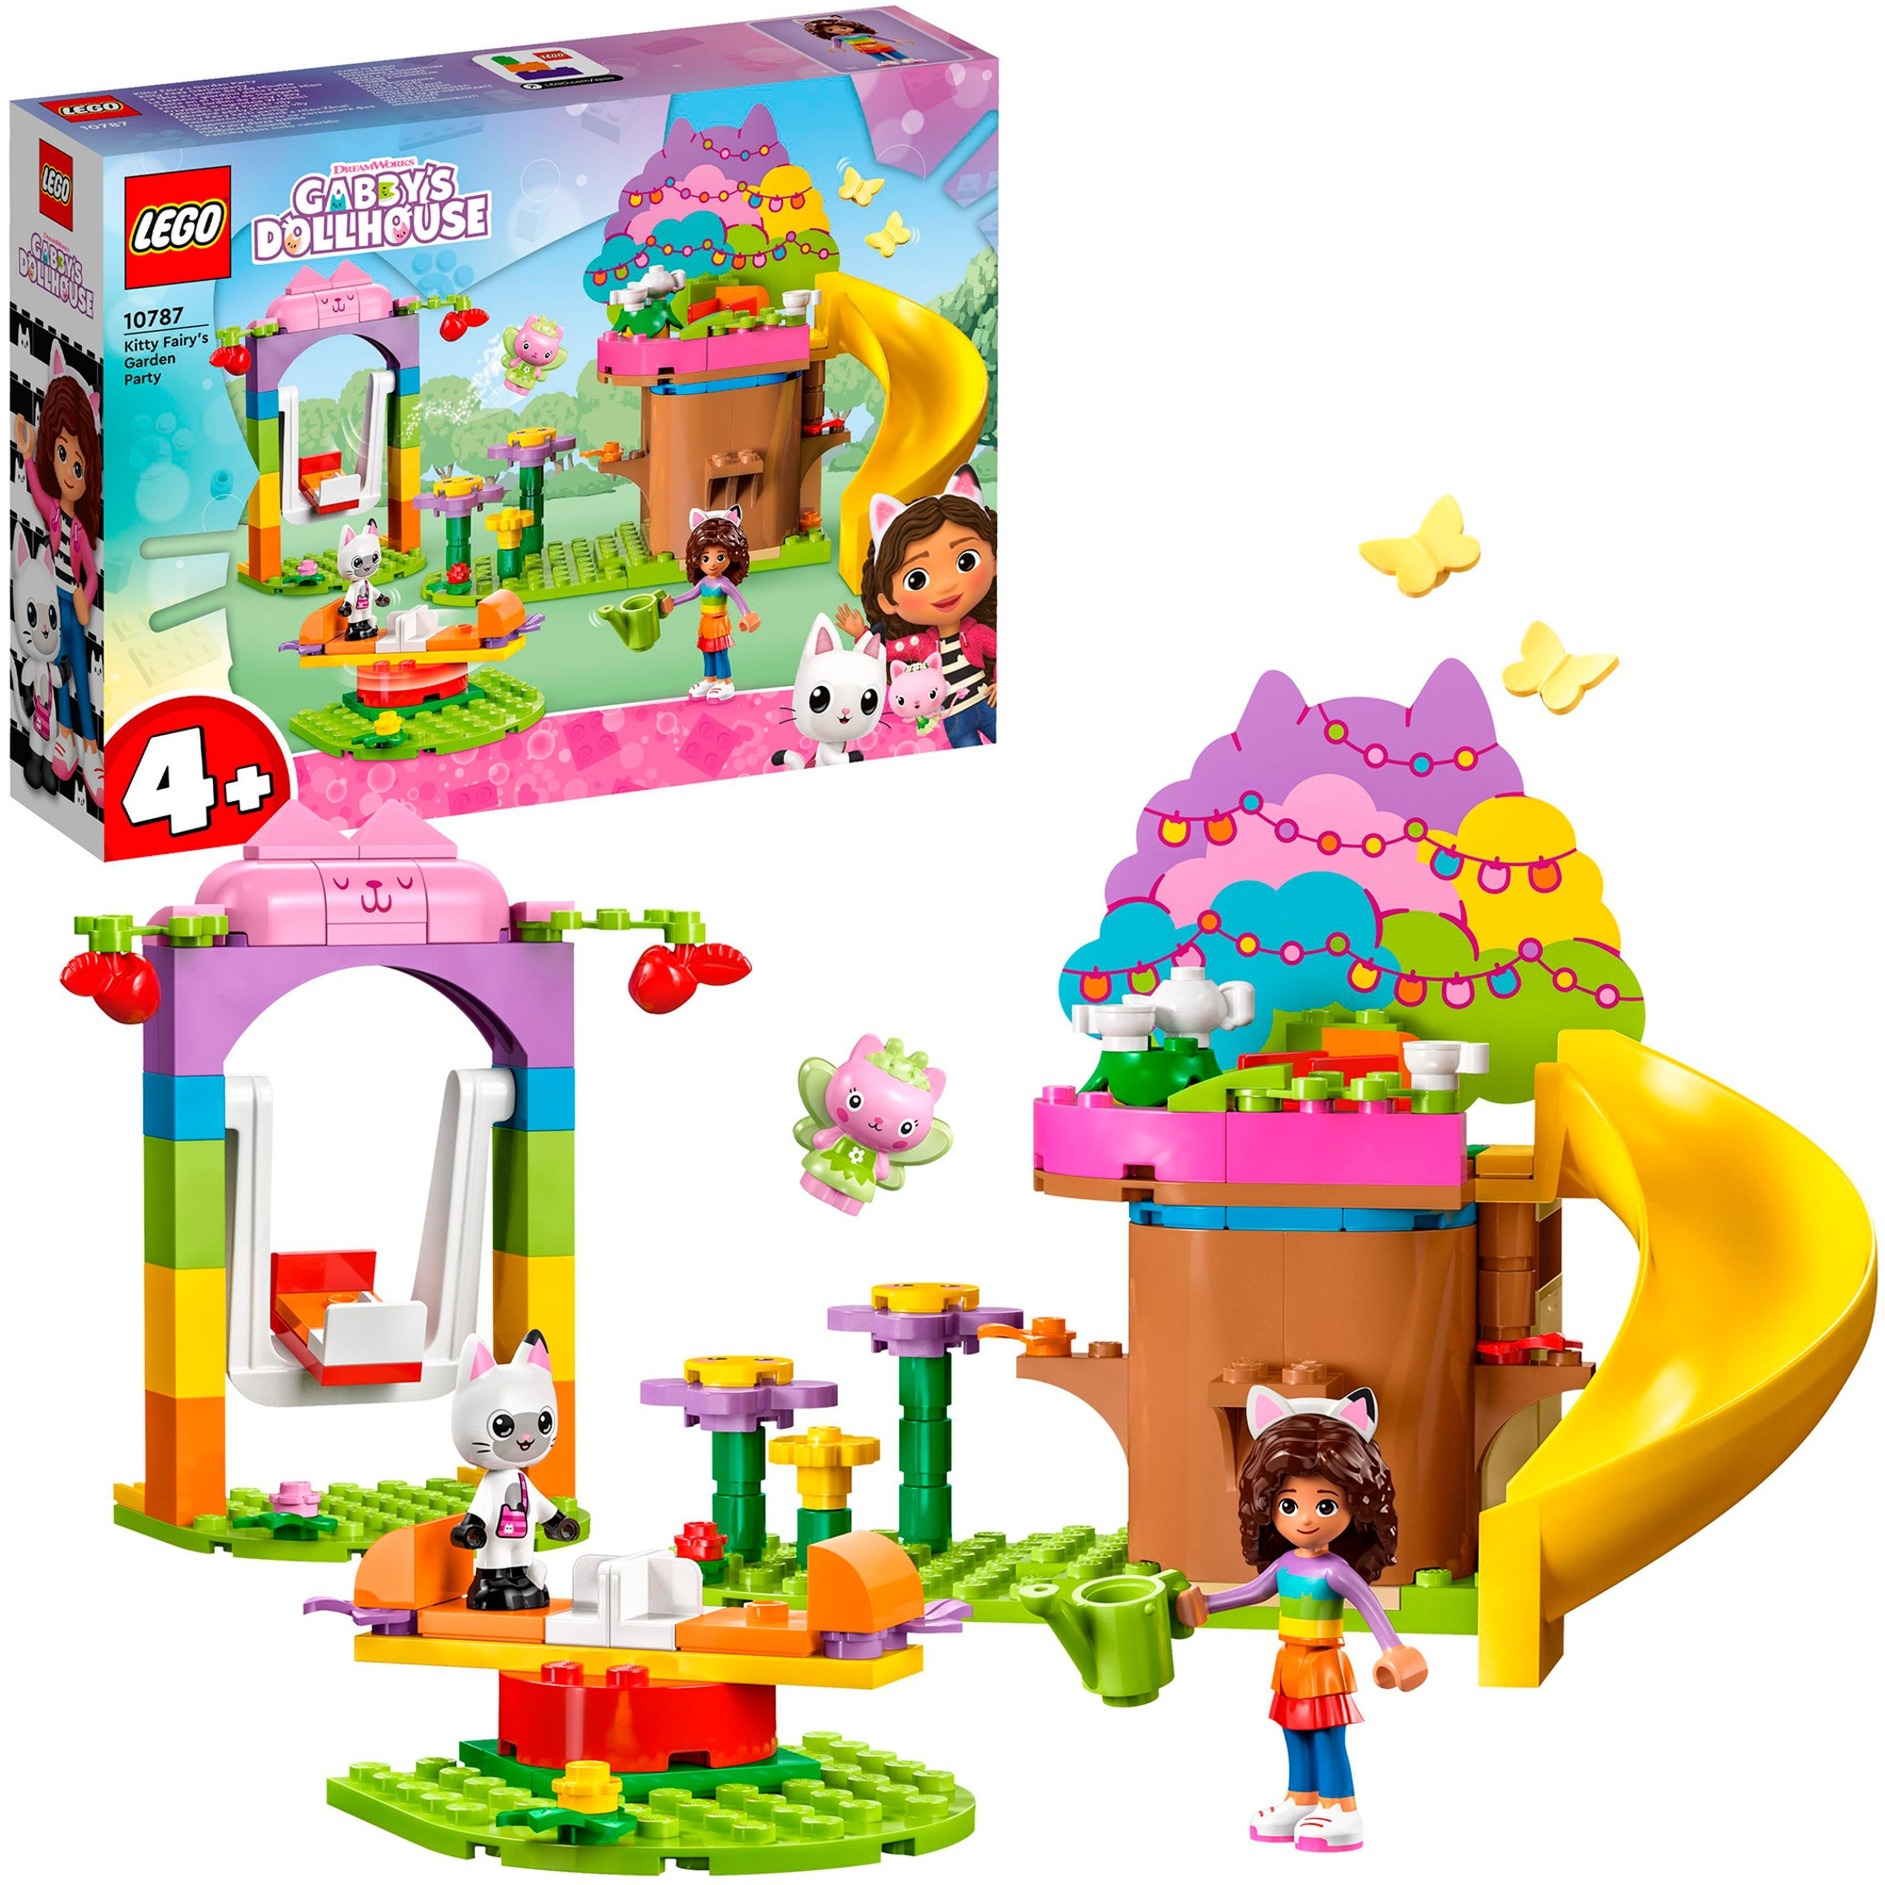 LEGO 10787 Gabby's Dollhouse Kitty Fees Gartenparty Puppenhaus Spielzeug Set mit Gabby, Pandi und Kitty Fee Figuren mit Baumhaus, Schaukel, Rutsche und Karussell, Geschenk für Mädchen, Jungen, Kinder